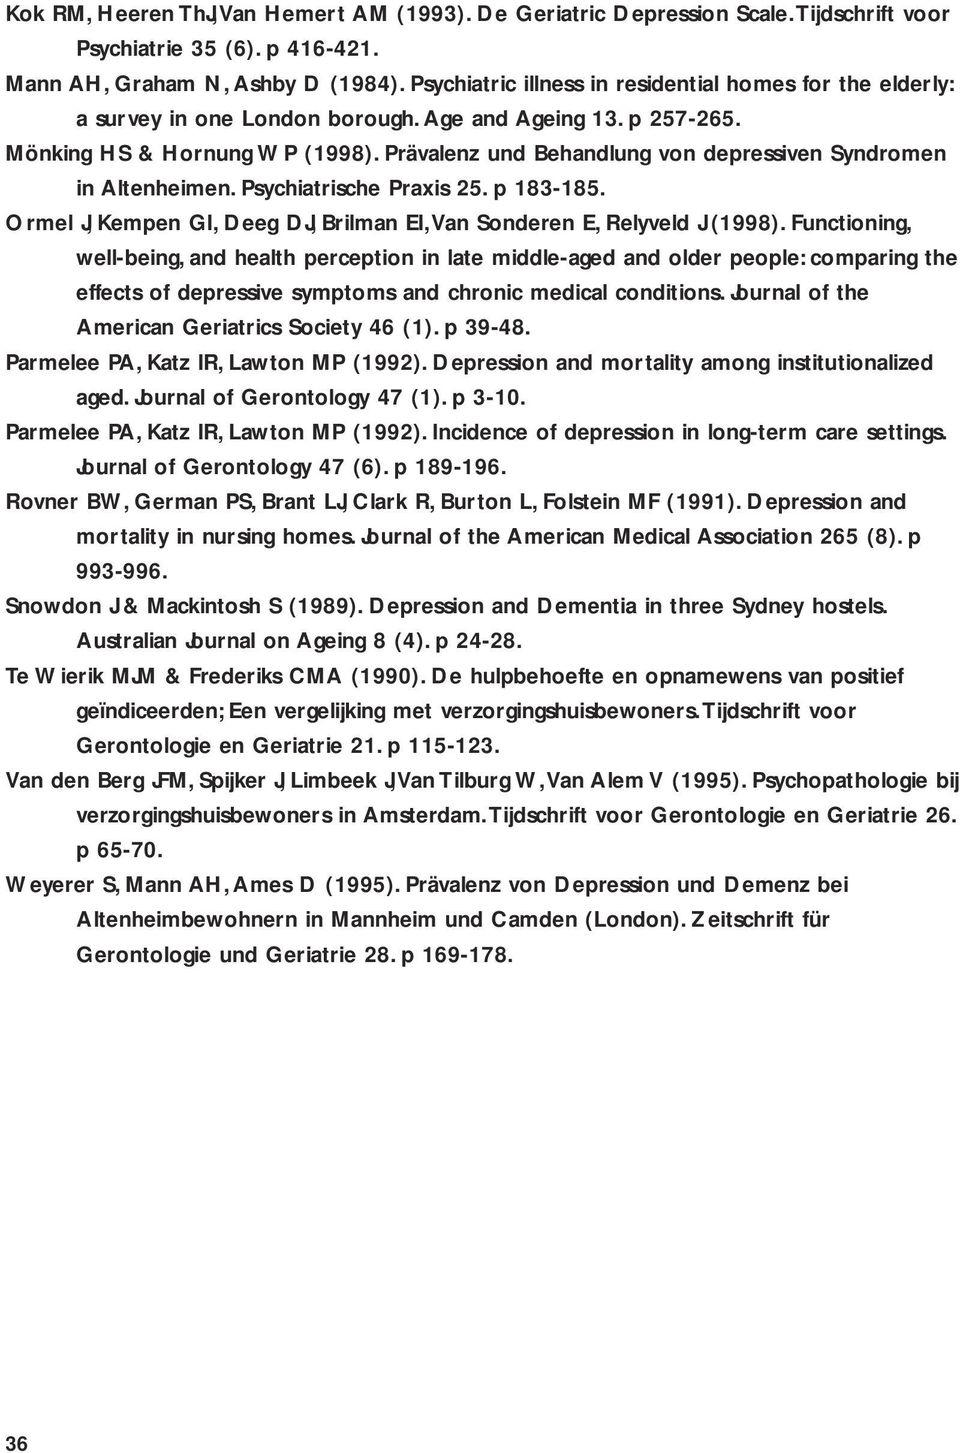 Prävalenz und Behandlung von depressiven Syndromen in Altenheimen. Psychiatrische Praxis 25. p 183-185. Ormel J, Kempen GI, Deeg DJ, Brilman EI,Van Sonderen E, Relyveld J (1998).